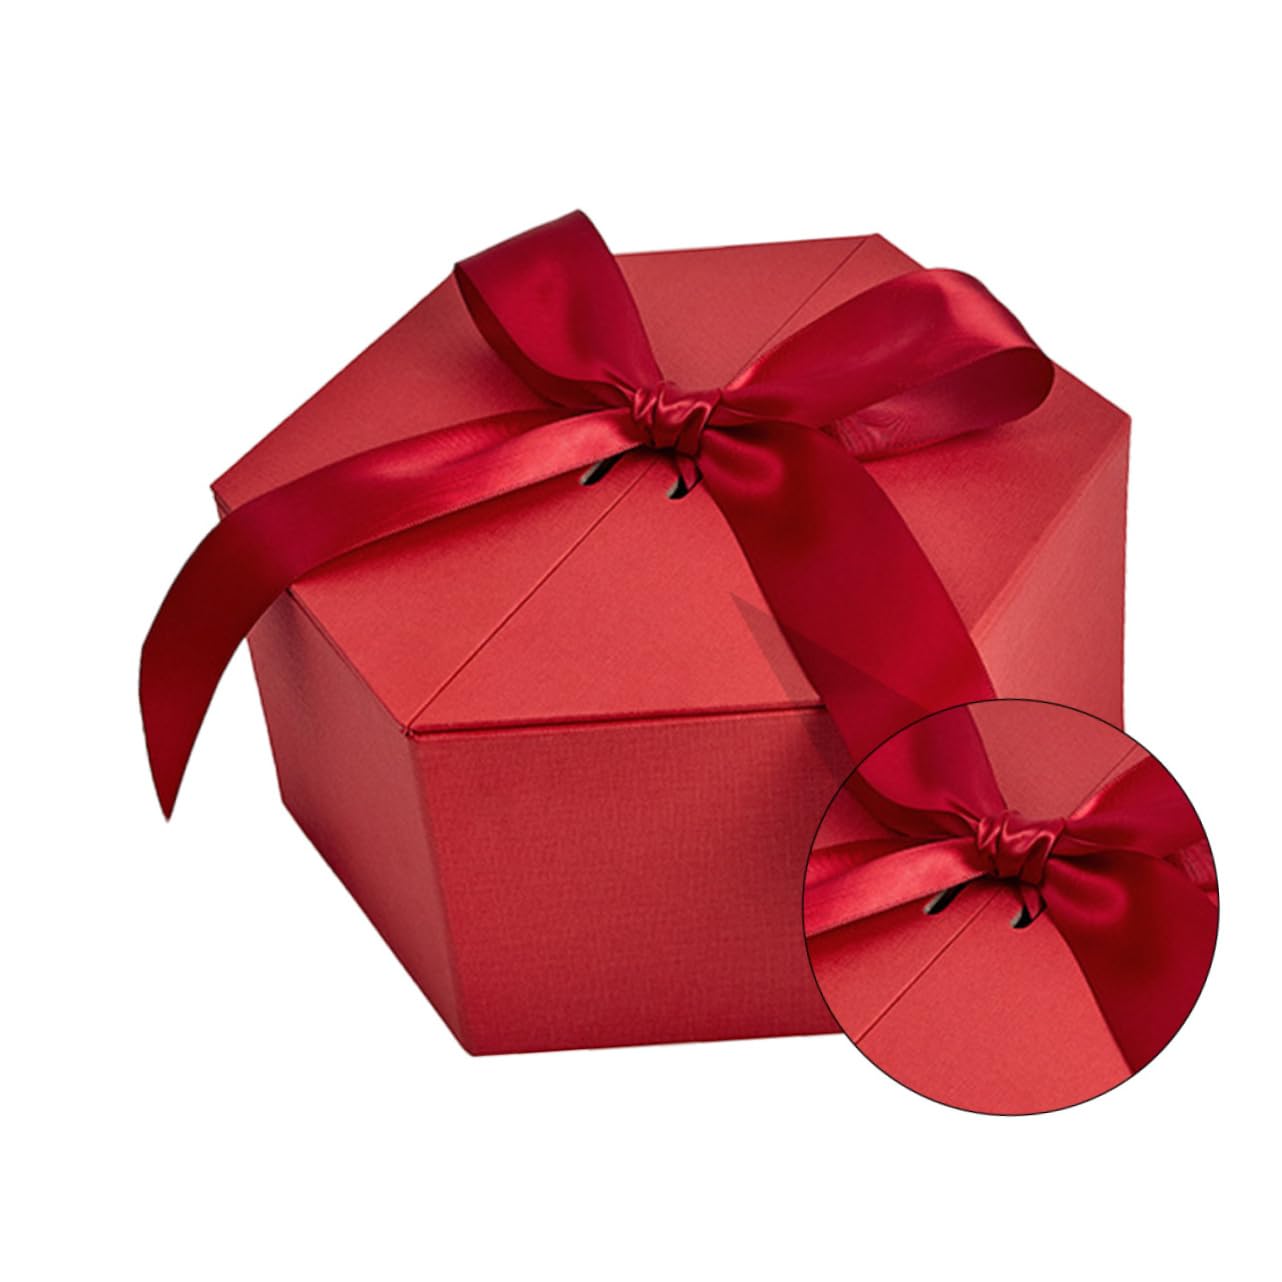 Promotions KOMBIUDA 1 Boîte boîte d´emballage boîte cadeau boîte hexagonale le jour des mères boîtes de friandises coffrets cadeaux casier de rangement cas présent hexagone boite cadeau XY1Ih28nA en ligne